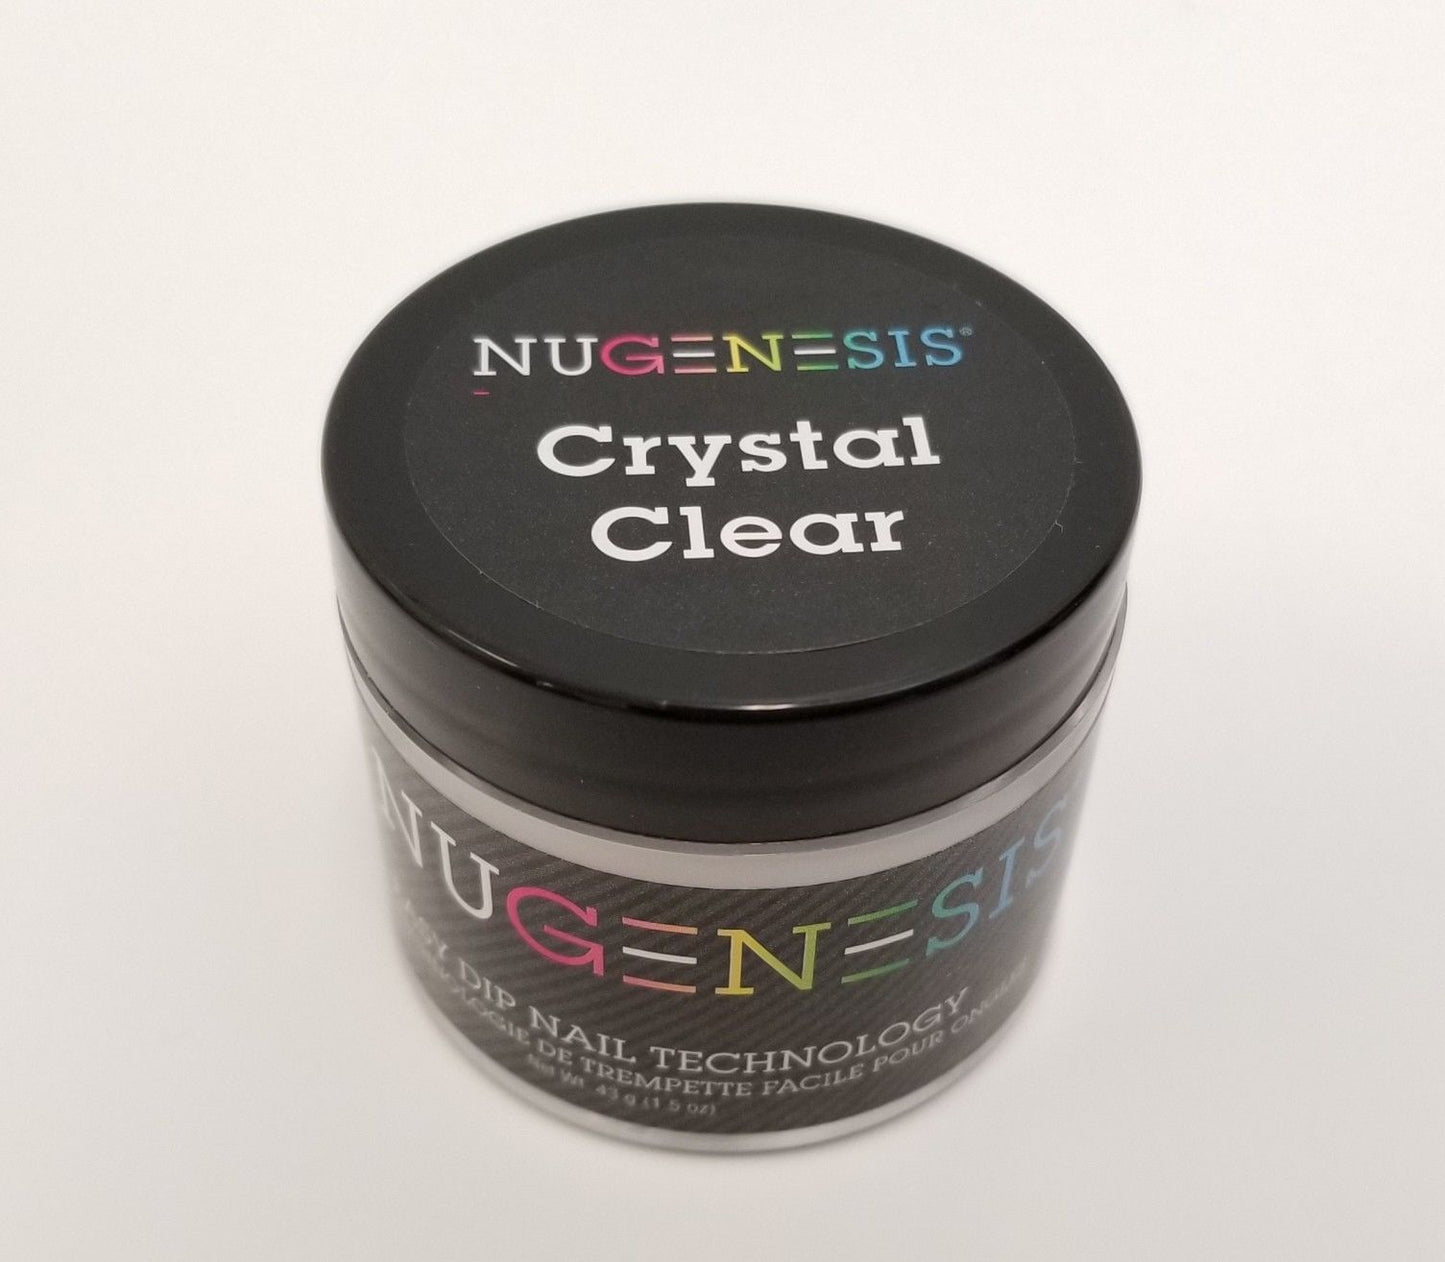 NuGenesis Nail Easy Dip Powder - Kit de inicio 